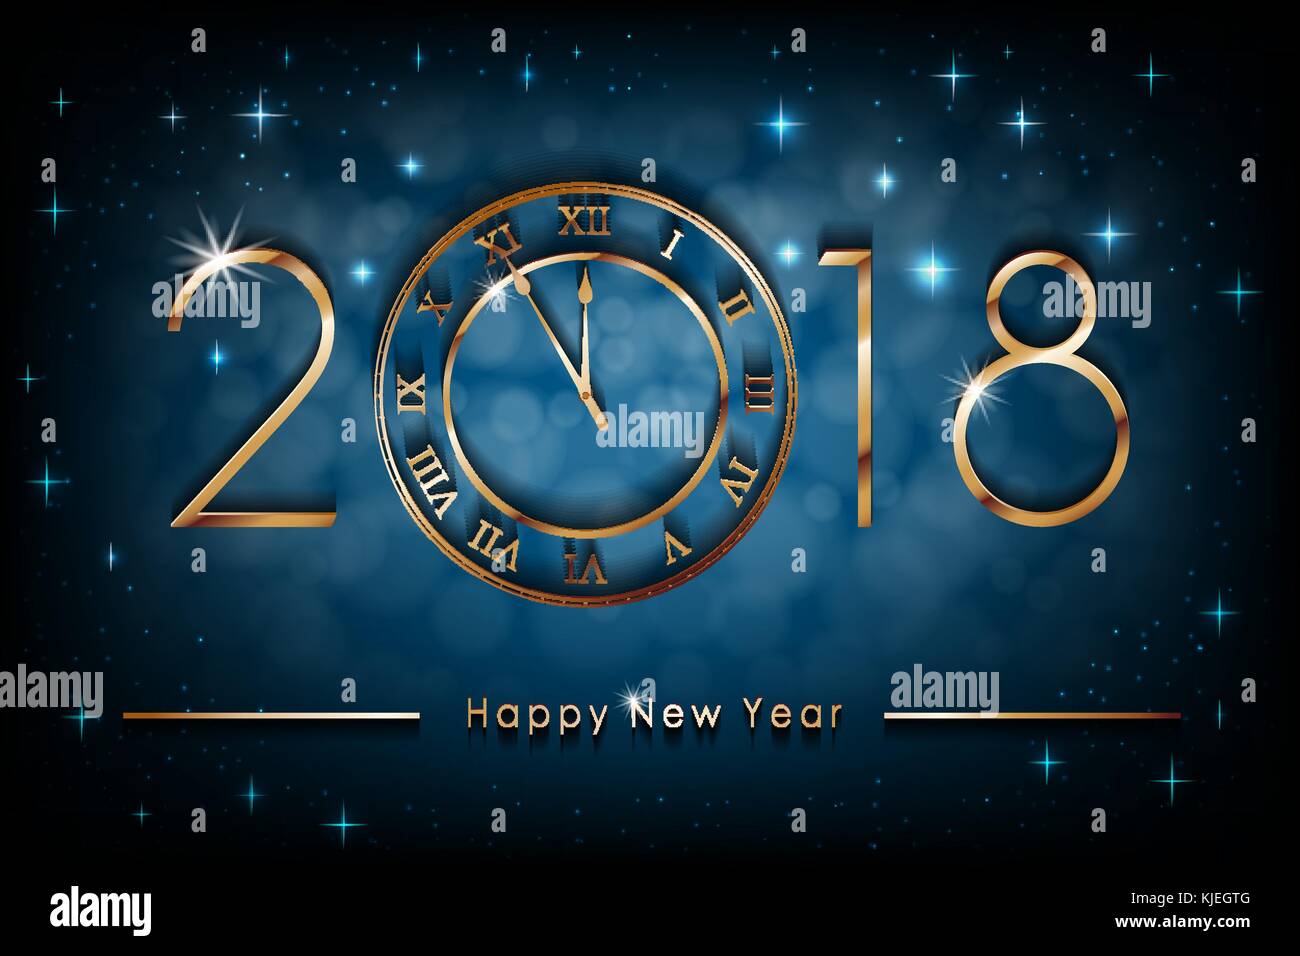 Frohes Neues 2018 Jahr Abbildung auf Blau glänzenden Hintergrund. Grüße neues Jahr Banner mit gold Uhr. bunten Winter Hintergrund. Vektor Stock Vektor